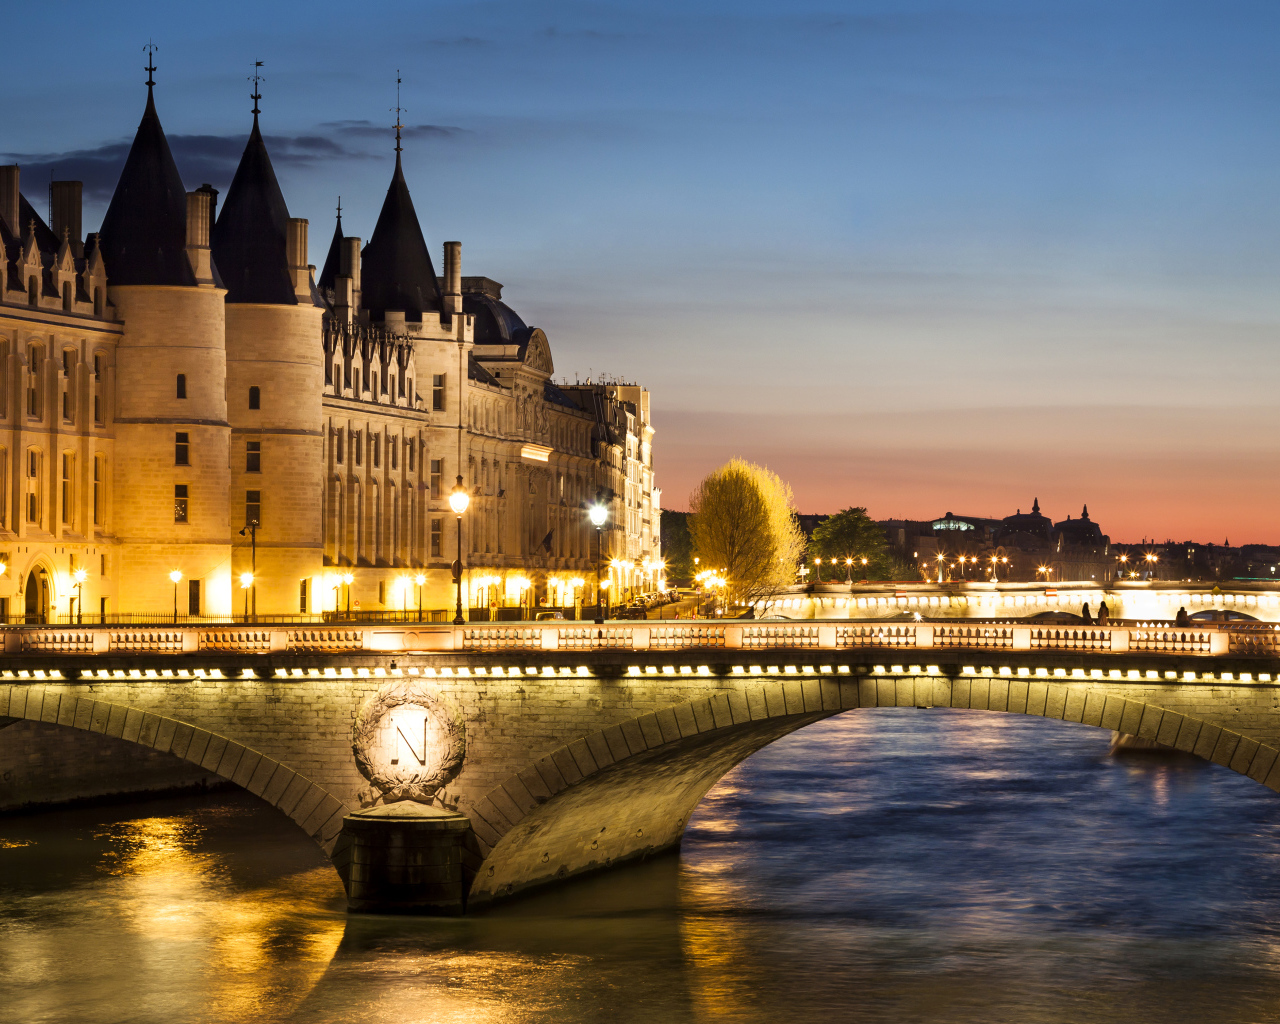 Мост в свете ночных фонарей у бывшего королевского замка Консьержери, Париж. Франция 